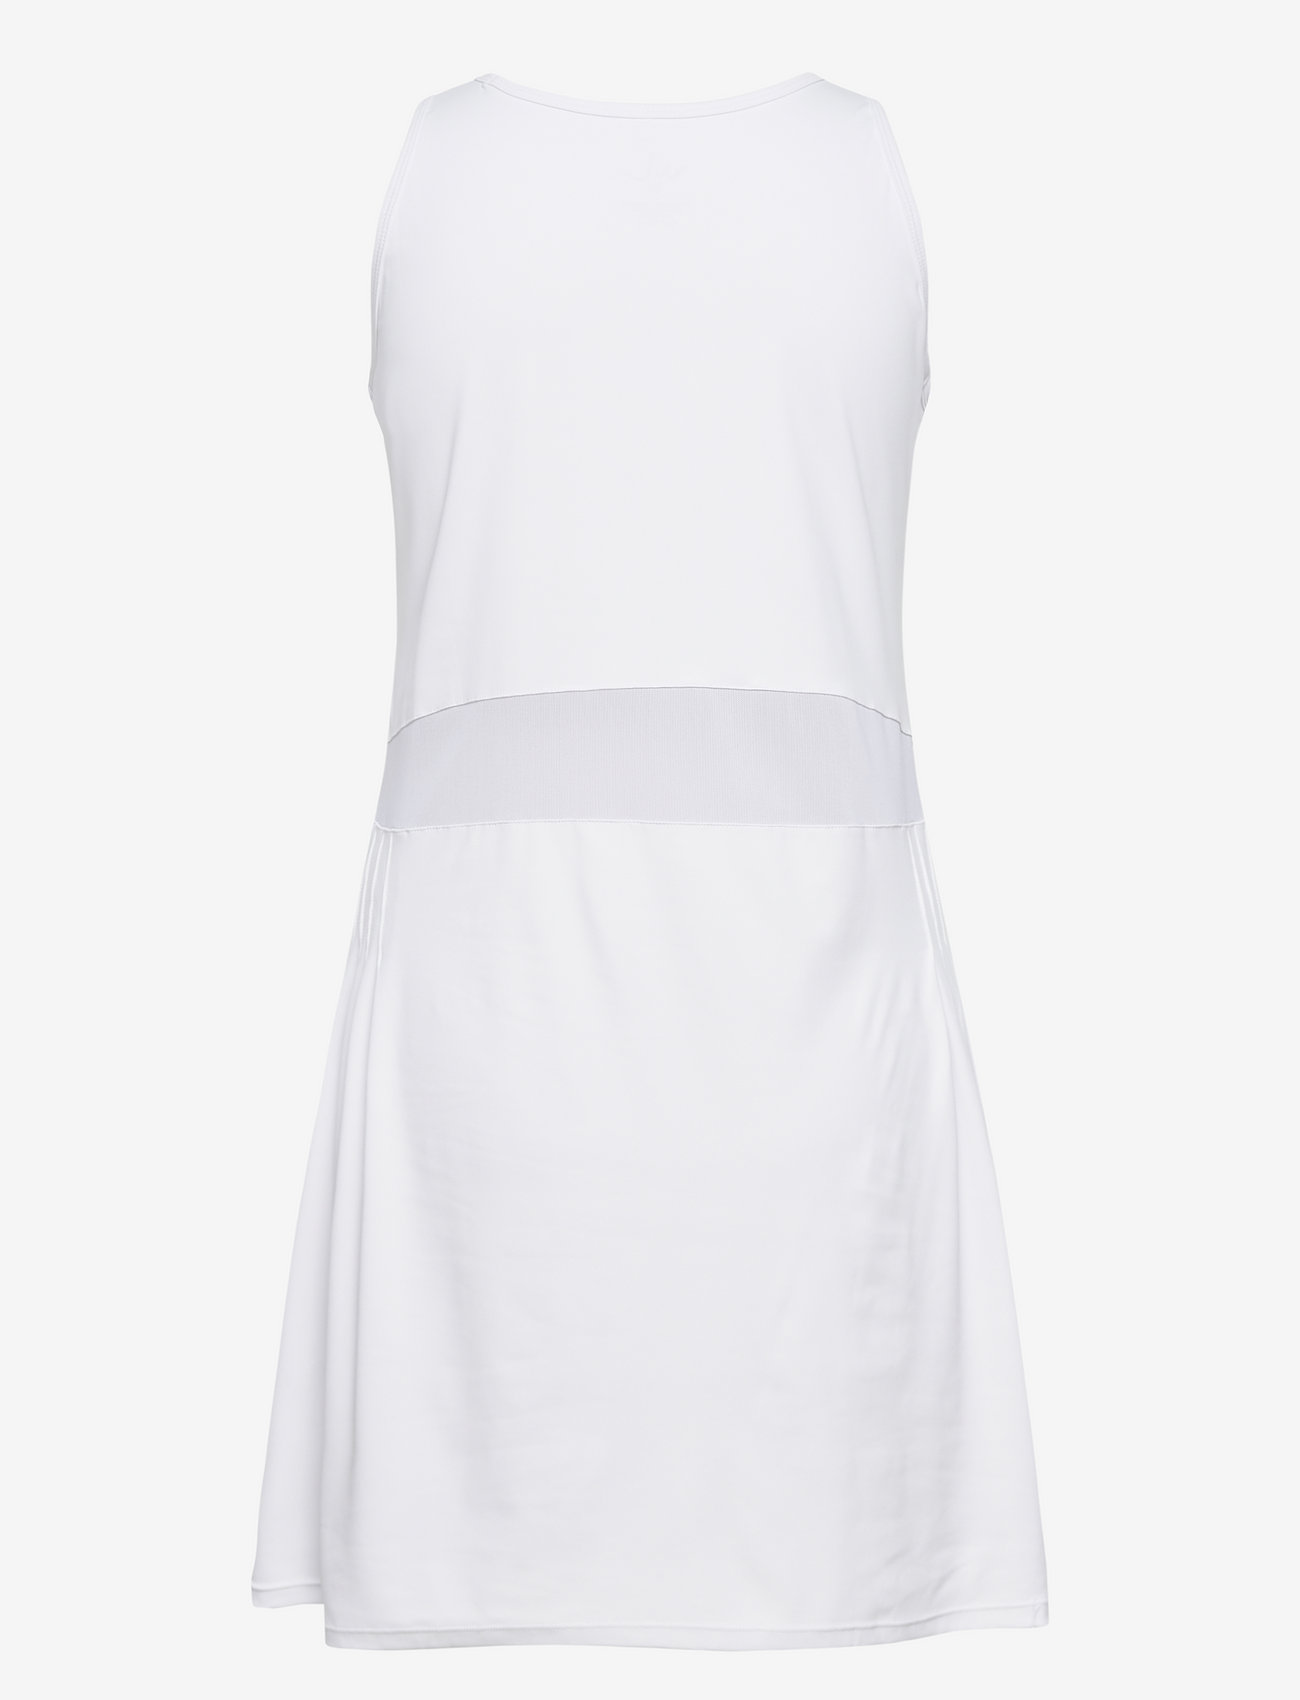 WILMA & LOUISE - Padel Court Dress - sportklänningar - white - 1